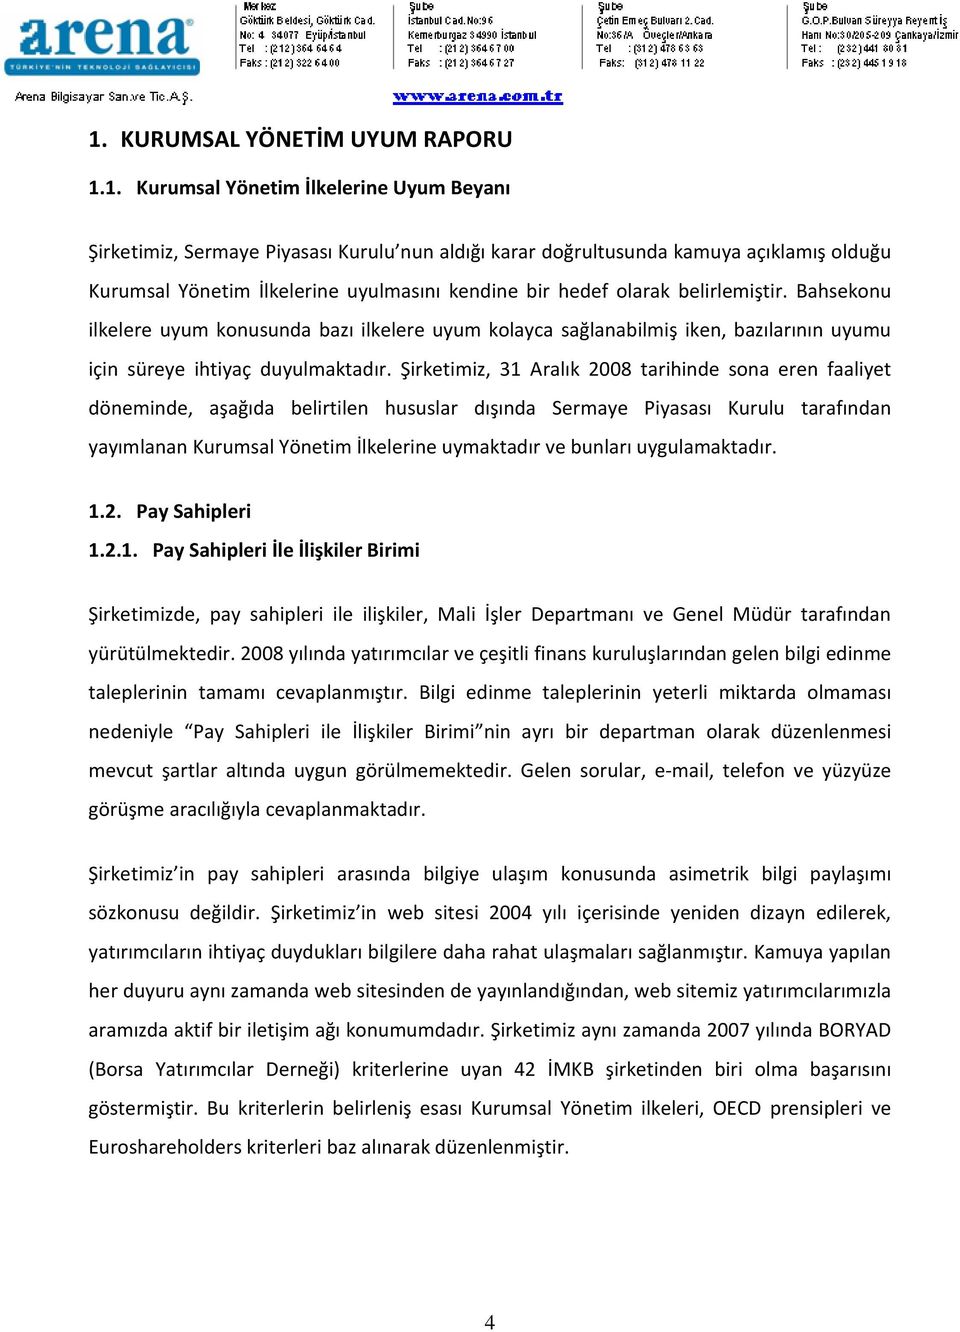 Şirketimiz, 31 Aralık 2008 tarihinde sona eren faaliyet döneminde, aşağıda belirtilen hususlar dışında Sermaye Piyasası Kurulu tarafından yayımlanan Kurumsal Yönetim İlkelerine uymaktadır ve bunları